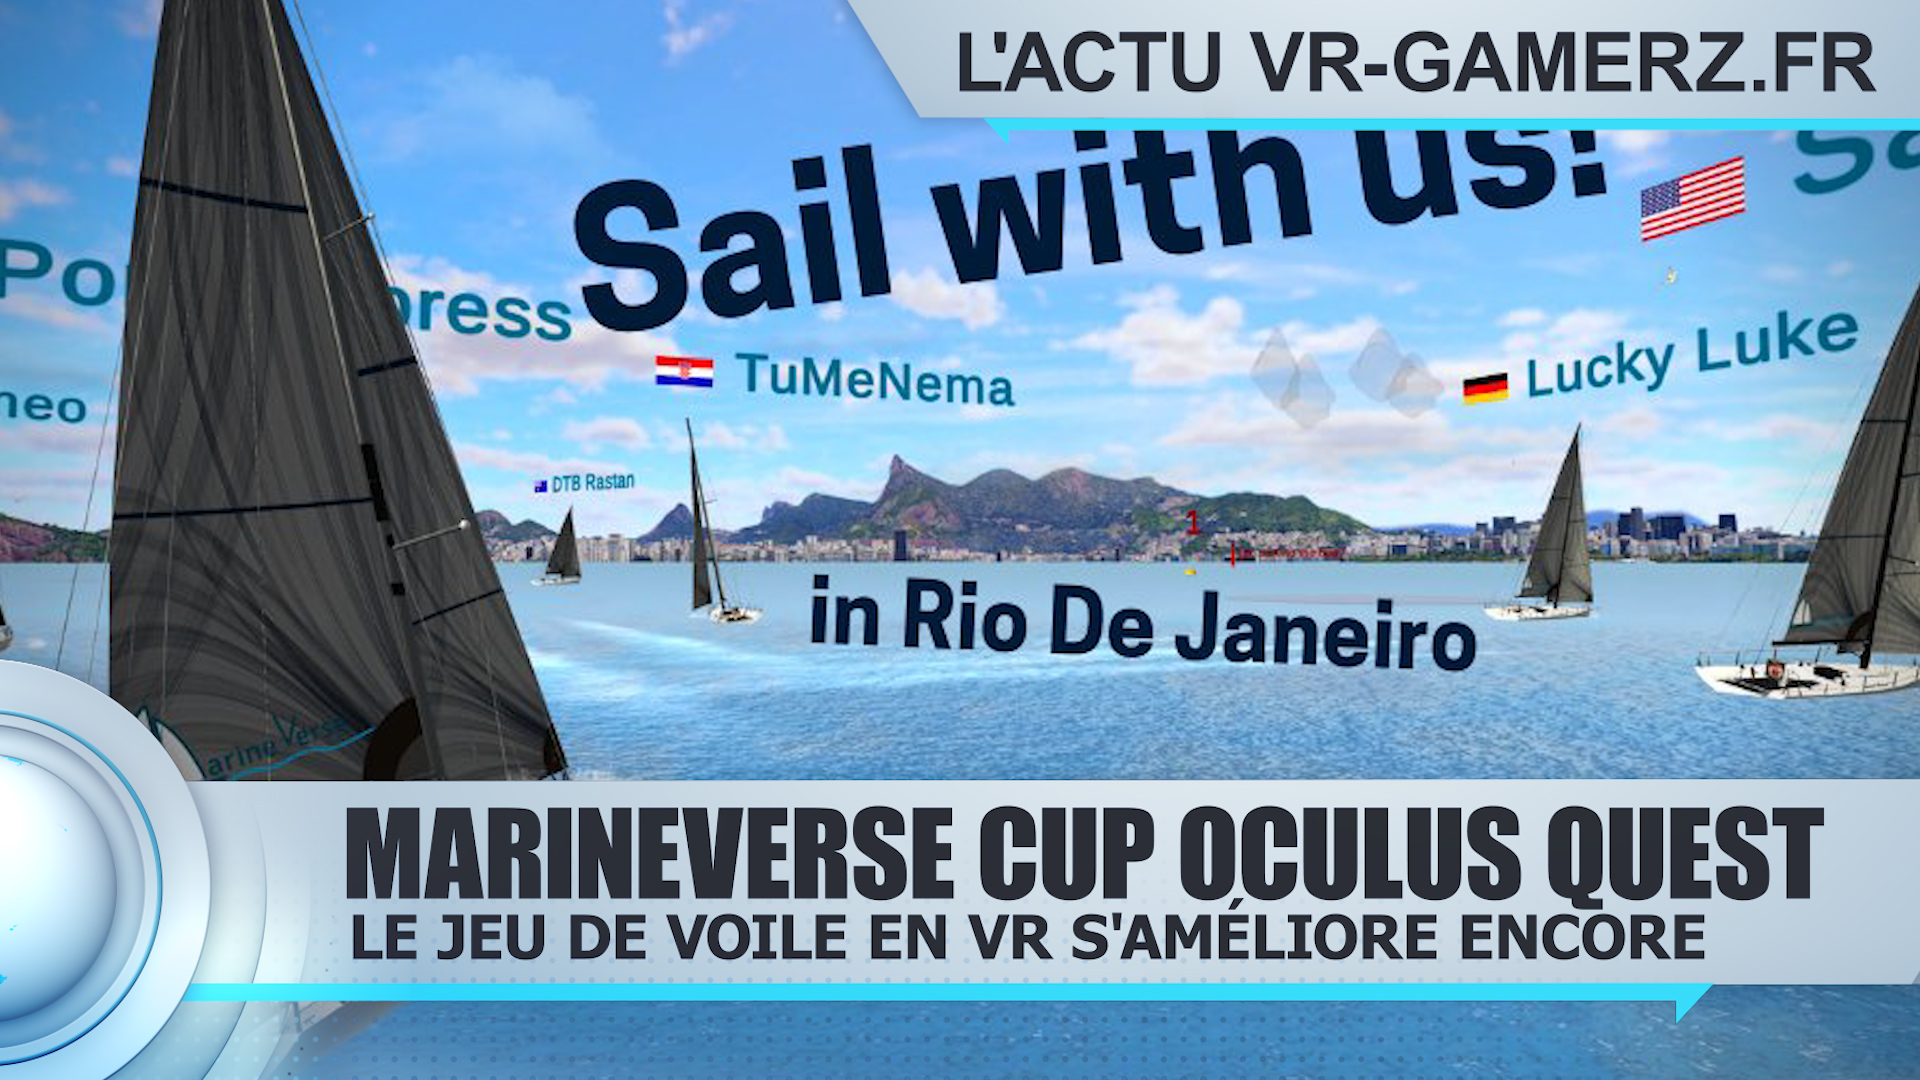 MarineVerse Cup Oculus quest : Le jeu de voile en VR s’améliore encore